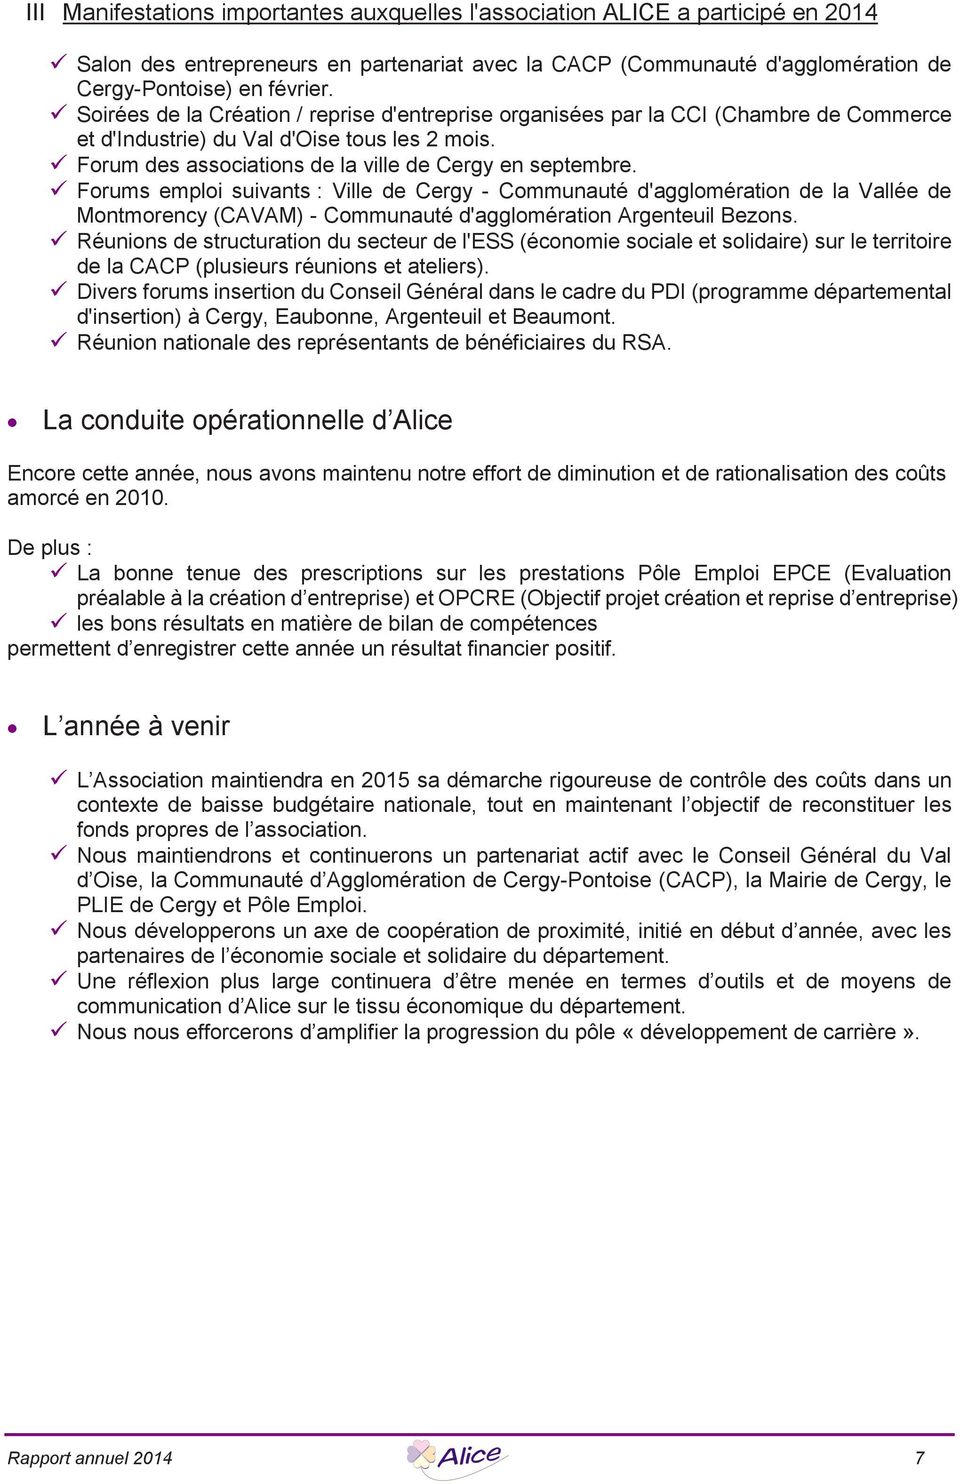 ü Forums emploi suivants : Ville de Cergy - Communauté d'agglomération de la Vallée de Montmorency (CAVAM) - Communauté d'agglomération Argenteuil Bezons.